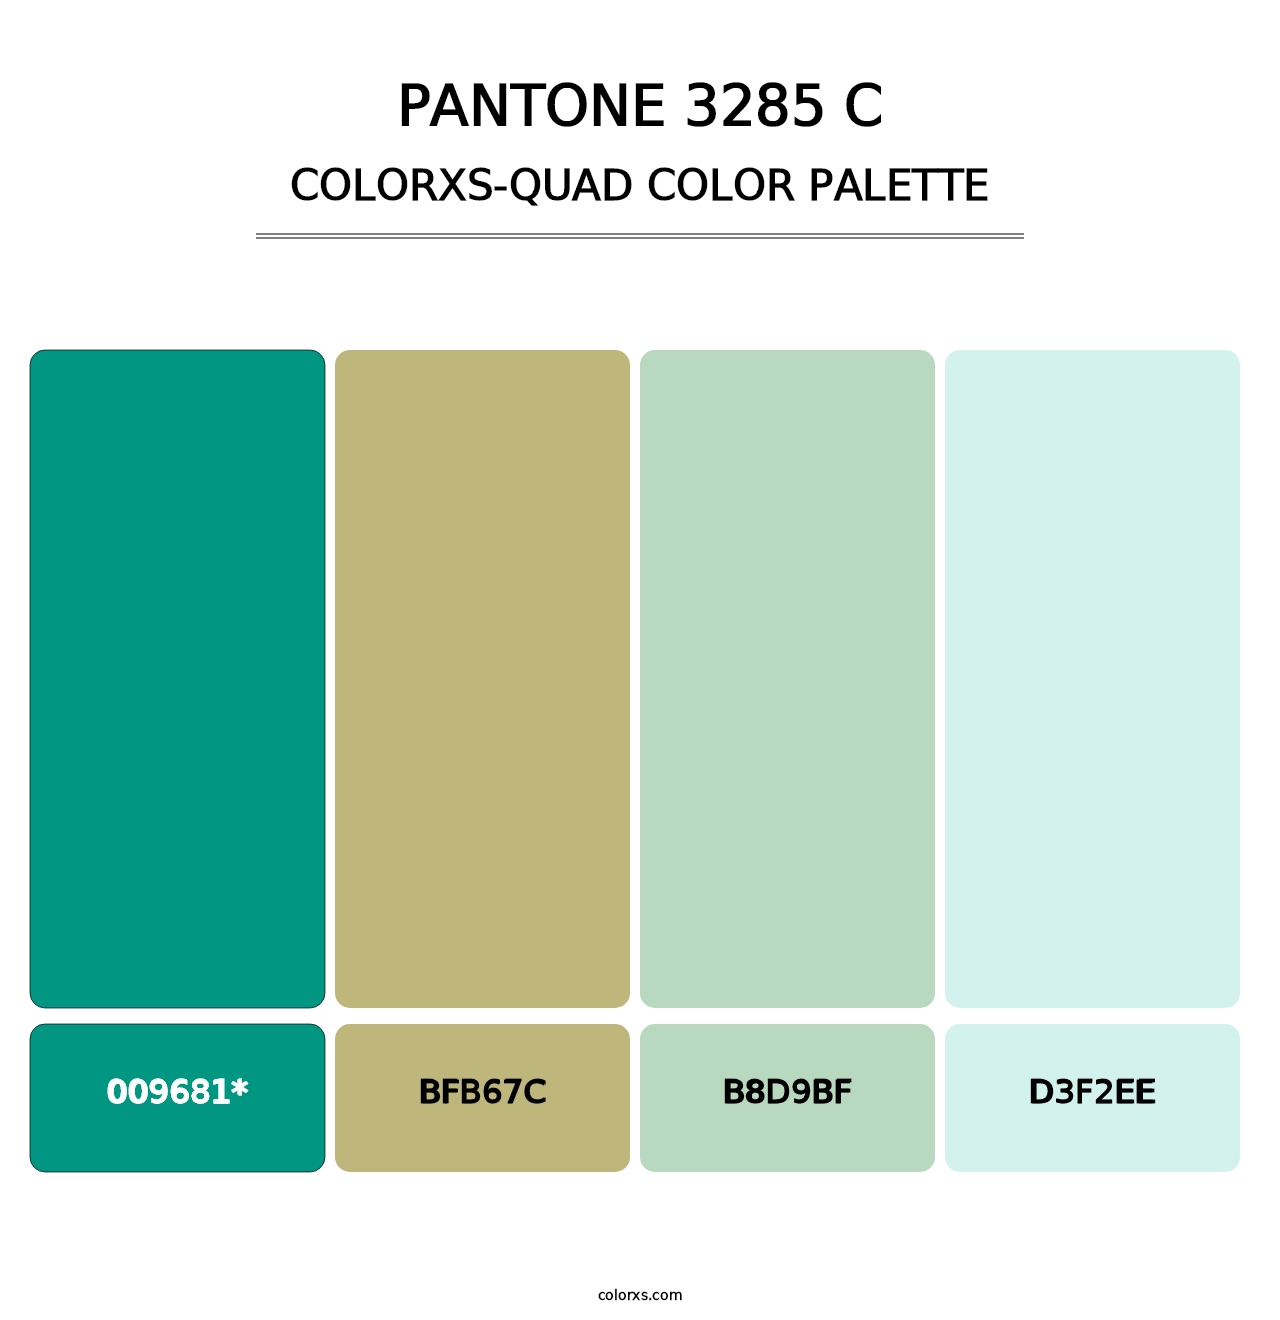 PANTONE 3285 C - Colorxs Quad Palette